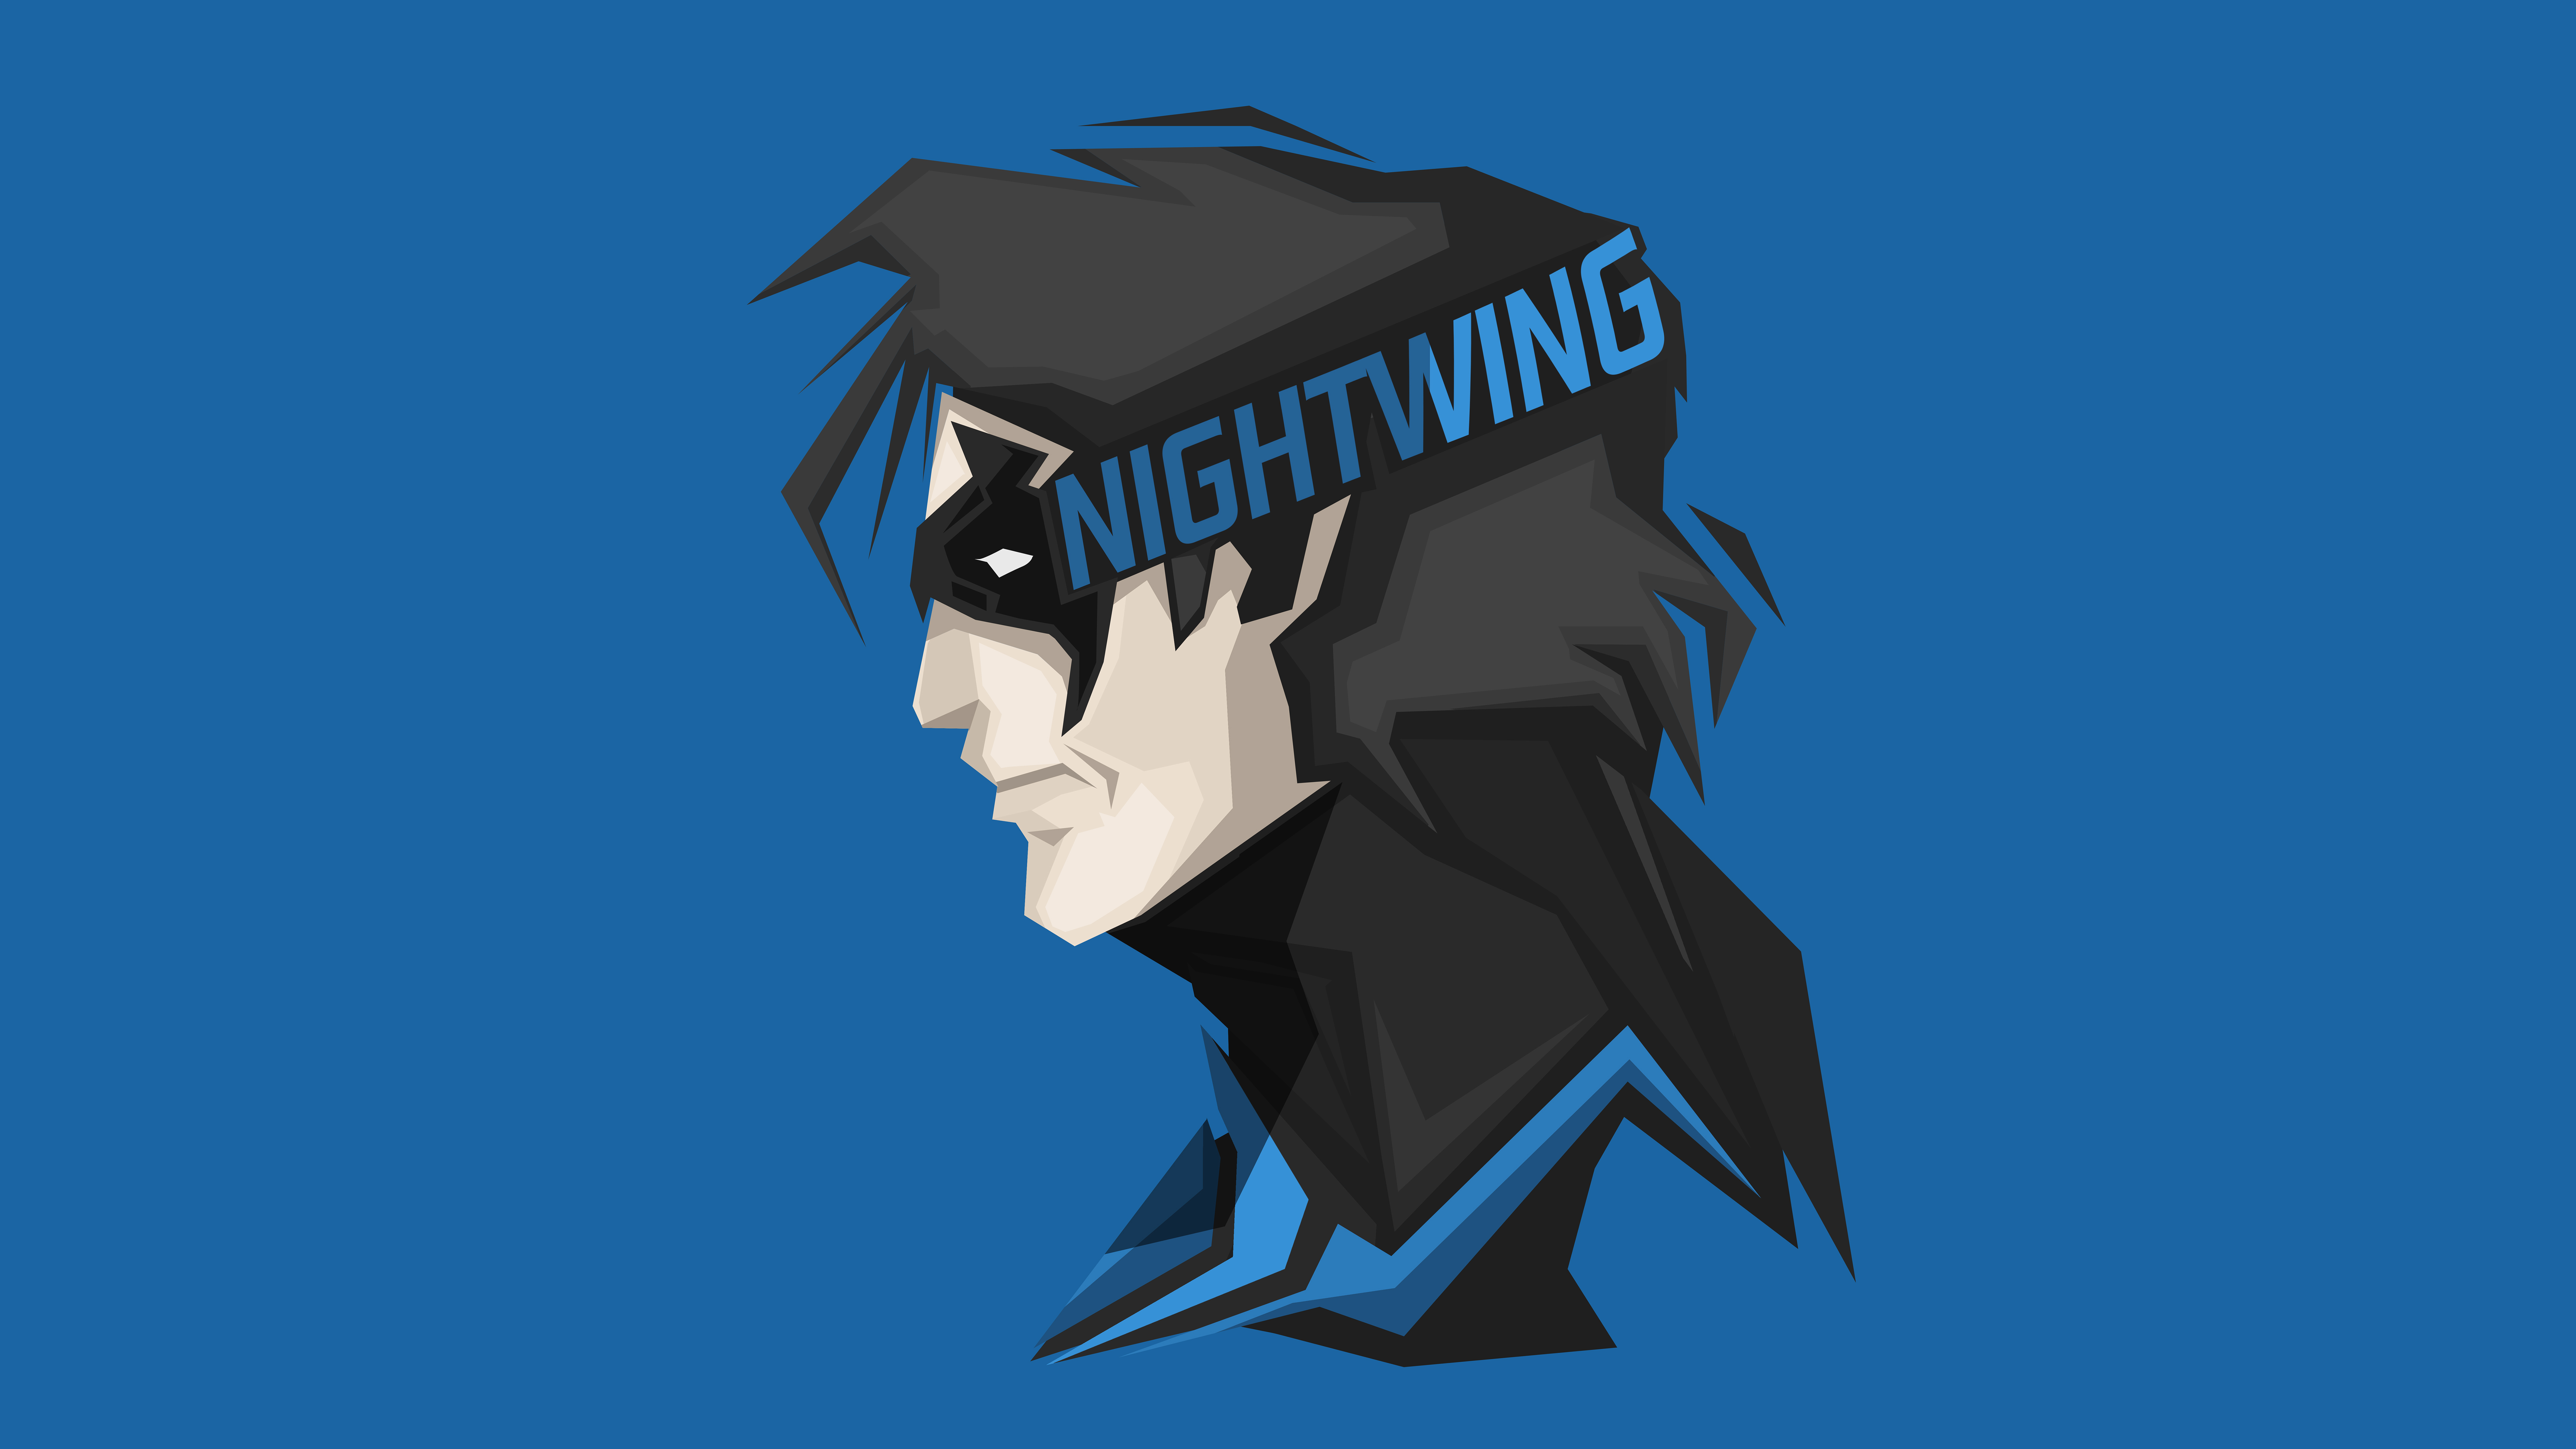 Nightwing DC Comics Superhero 4K 8k Wallpapers